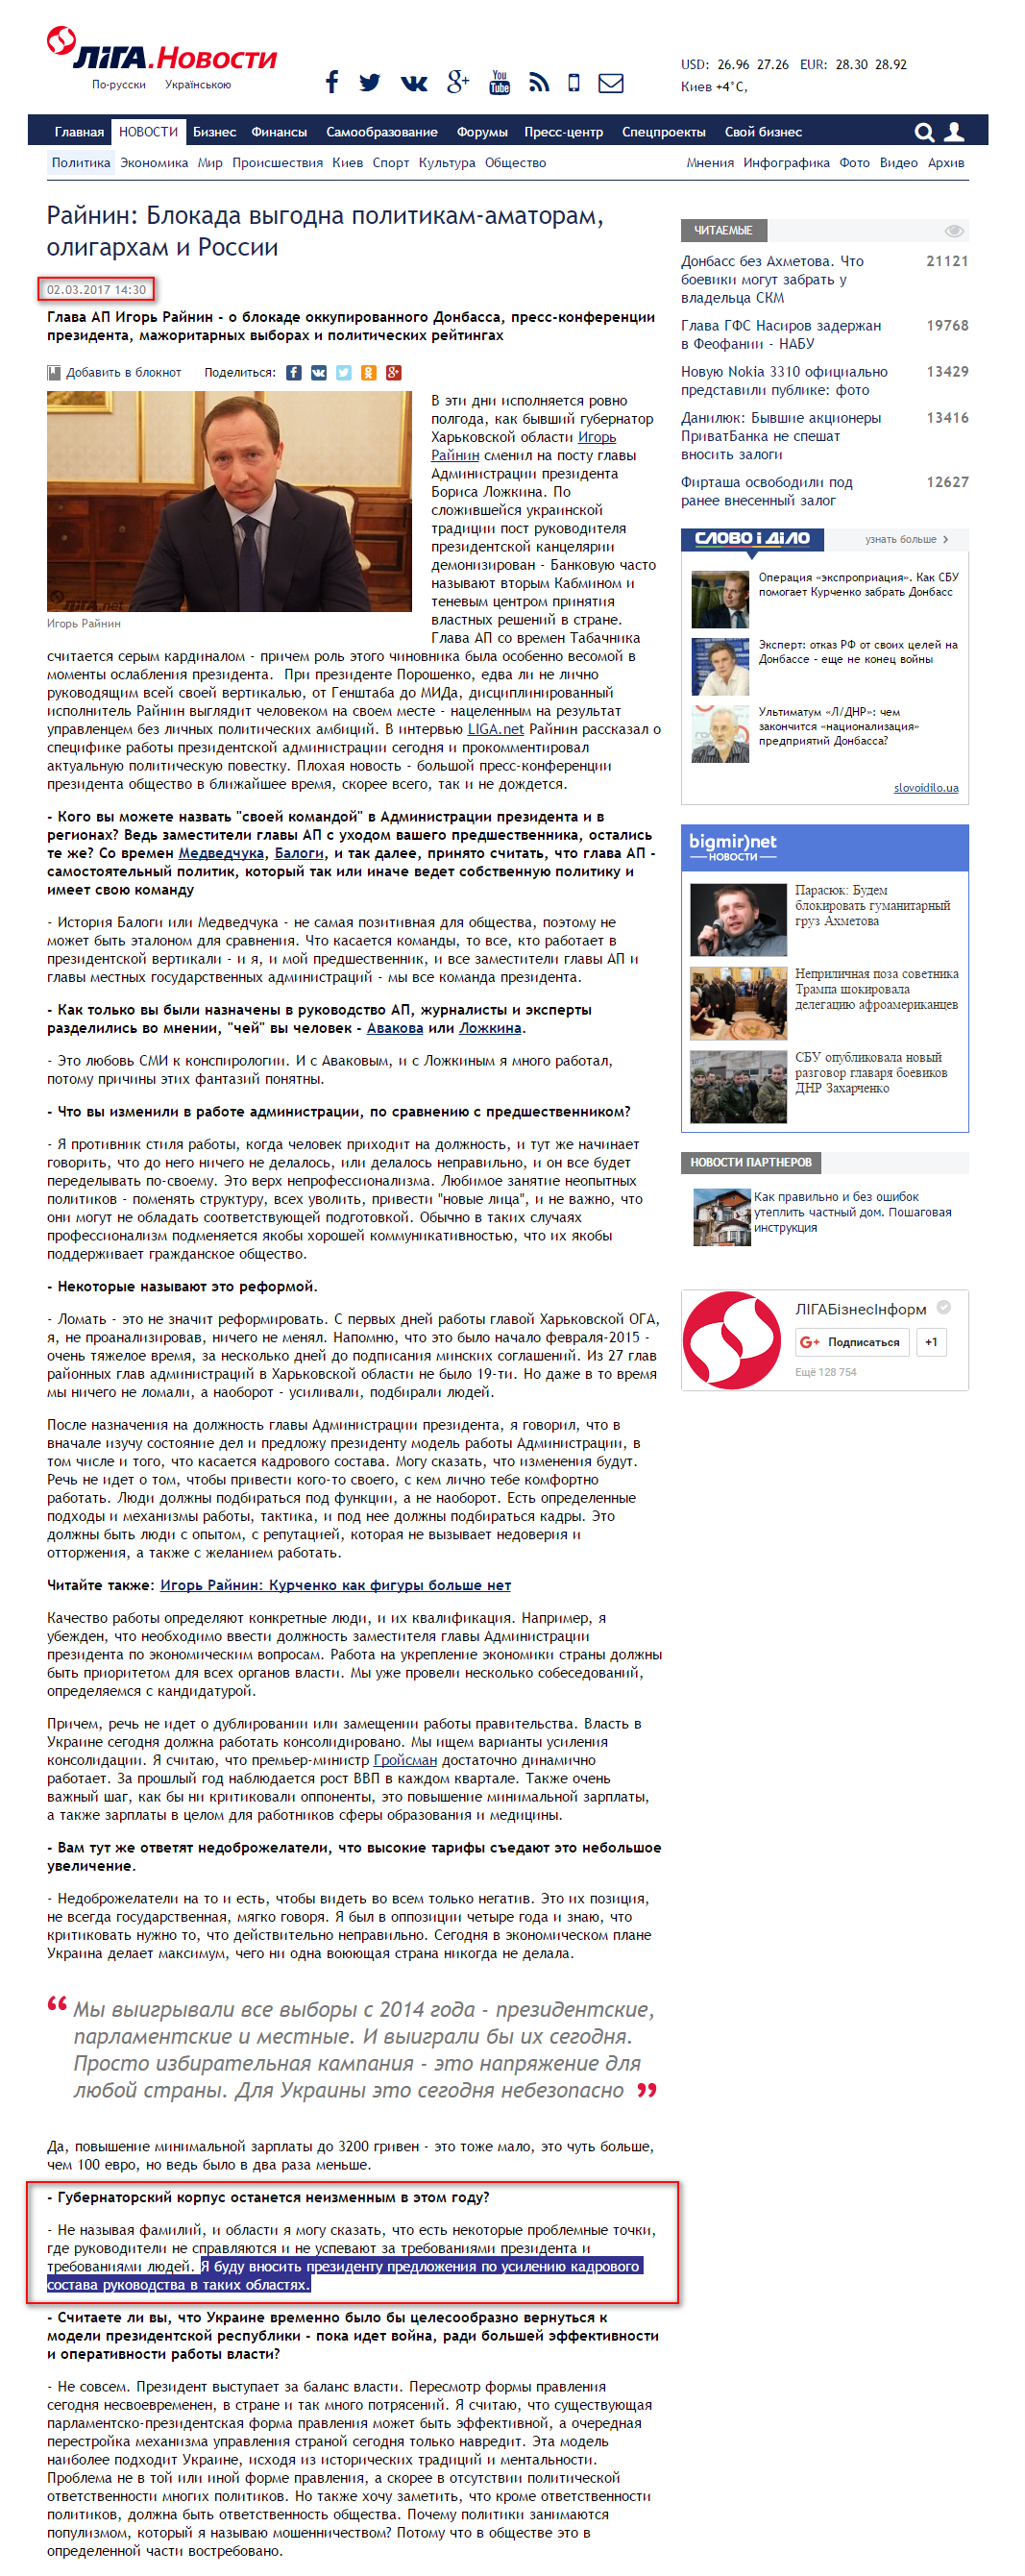 http://news.liga.net/interview/politics/14702219-raynin_blokada_vygodna_politikam_amatoram_oligarkham_i_rossii.htm